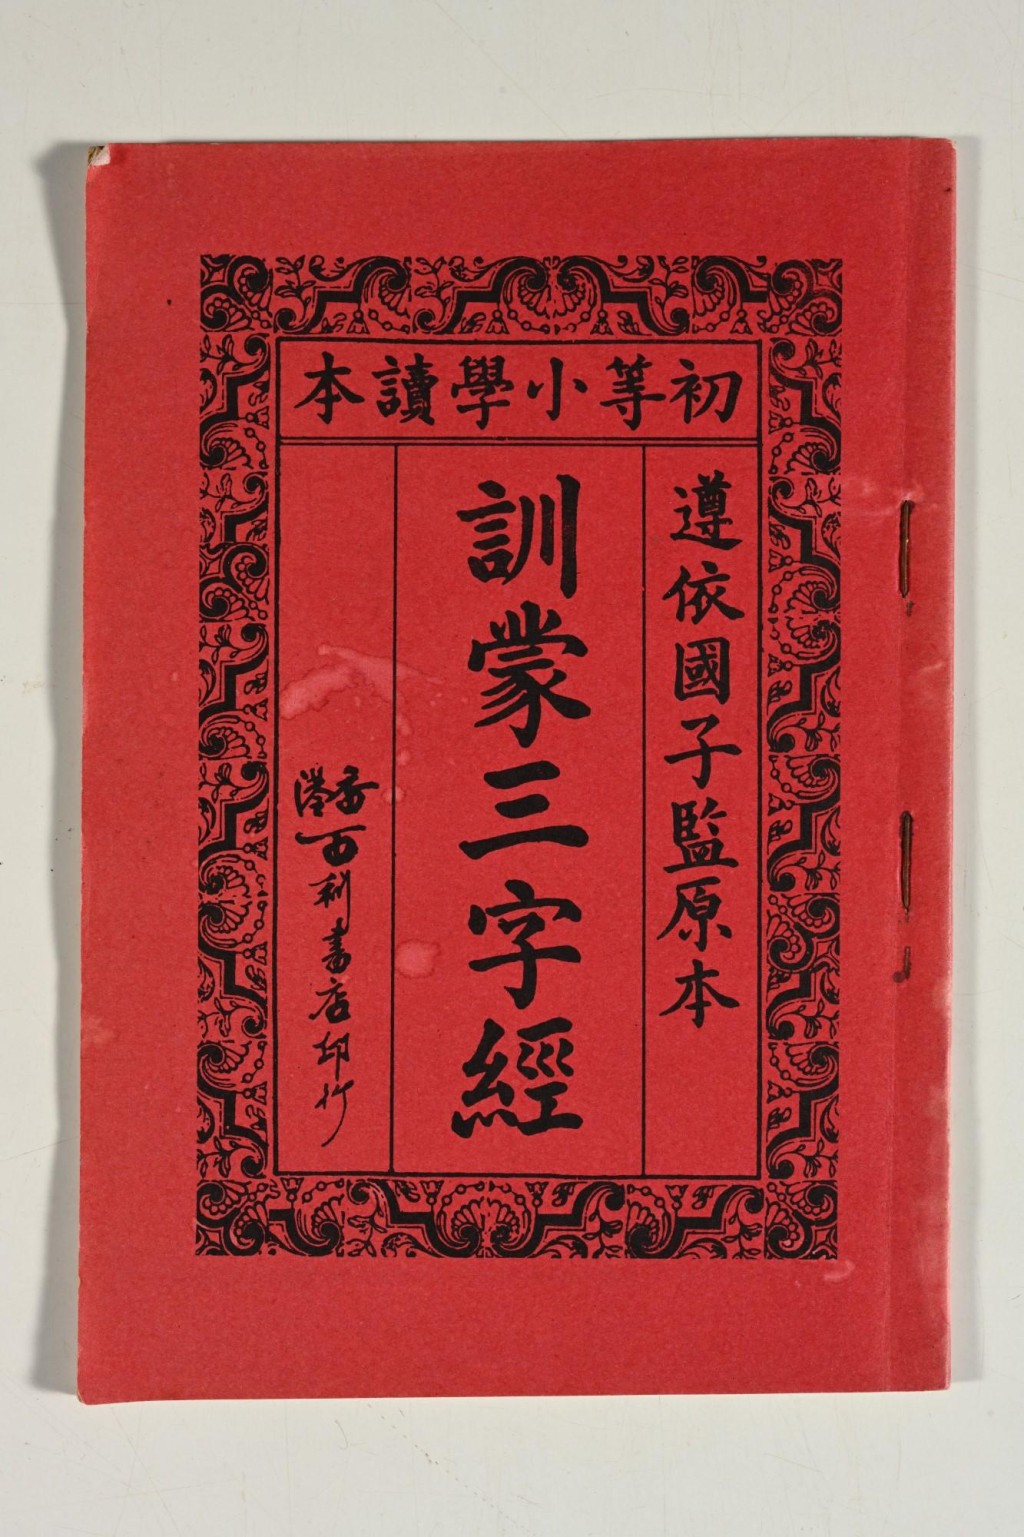 1930年代香港百利书店印行的《训蒙三字经》。政府新闻处